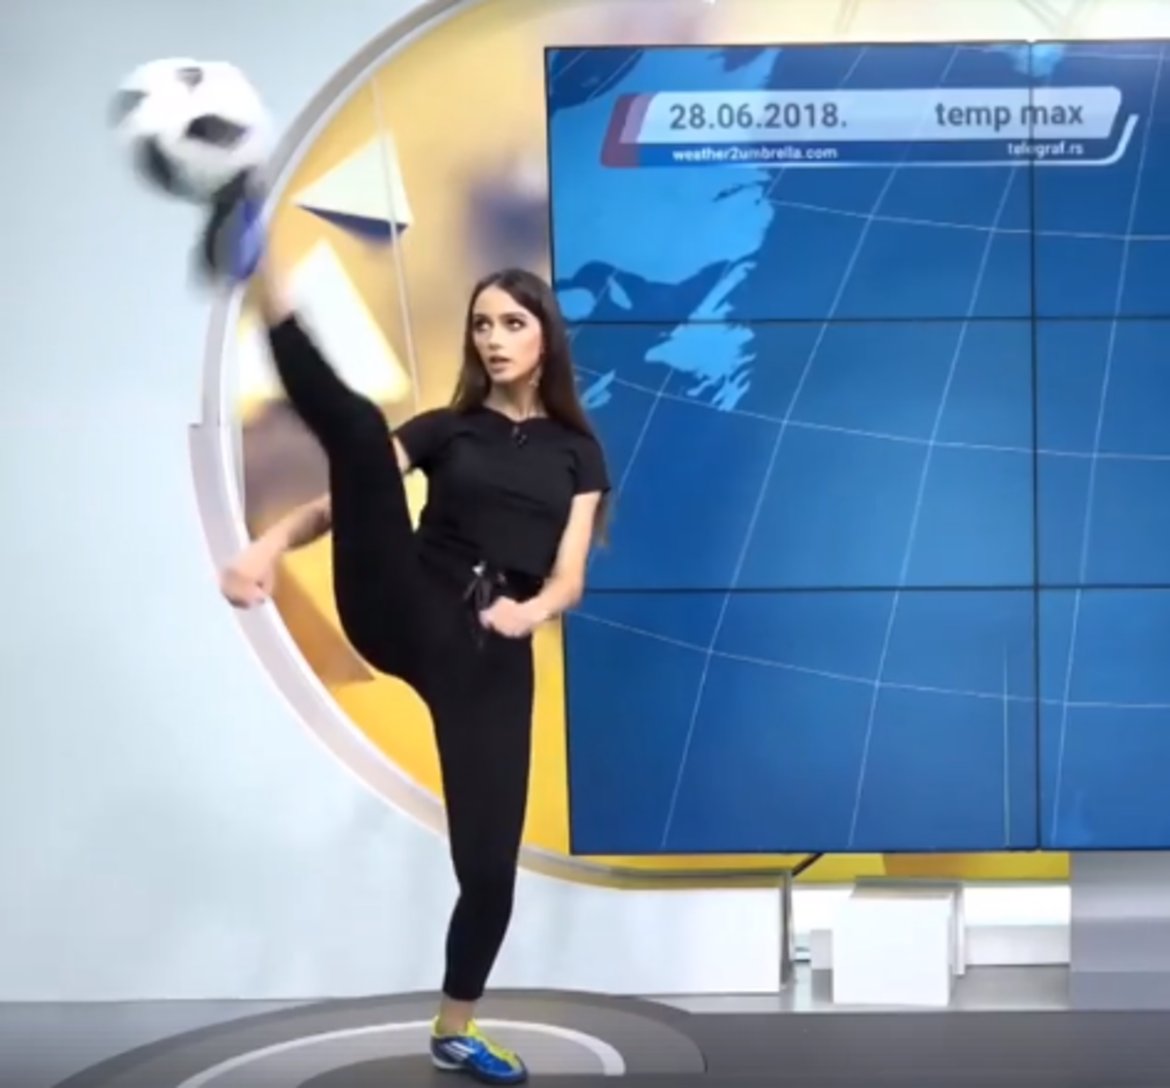 Сръбска синоптичка показа как се прави в ефир (видео)